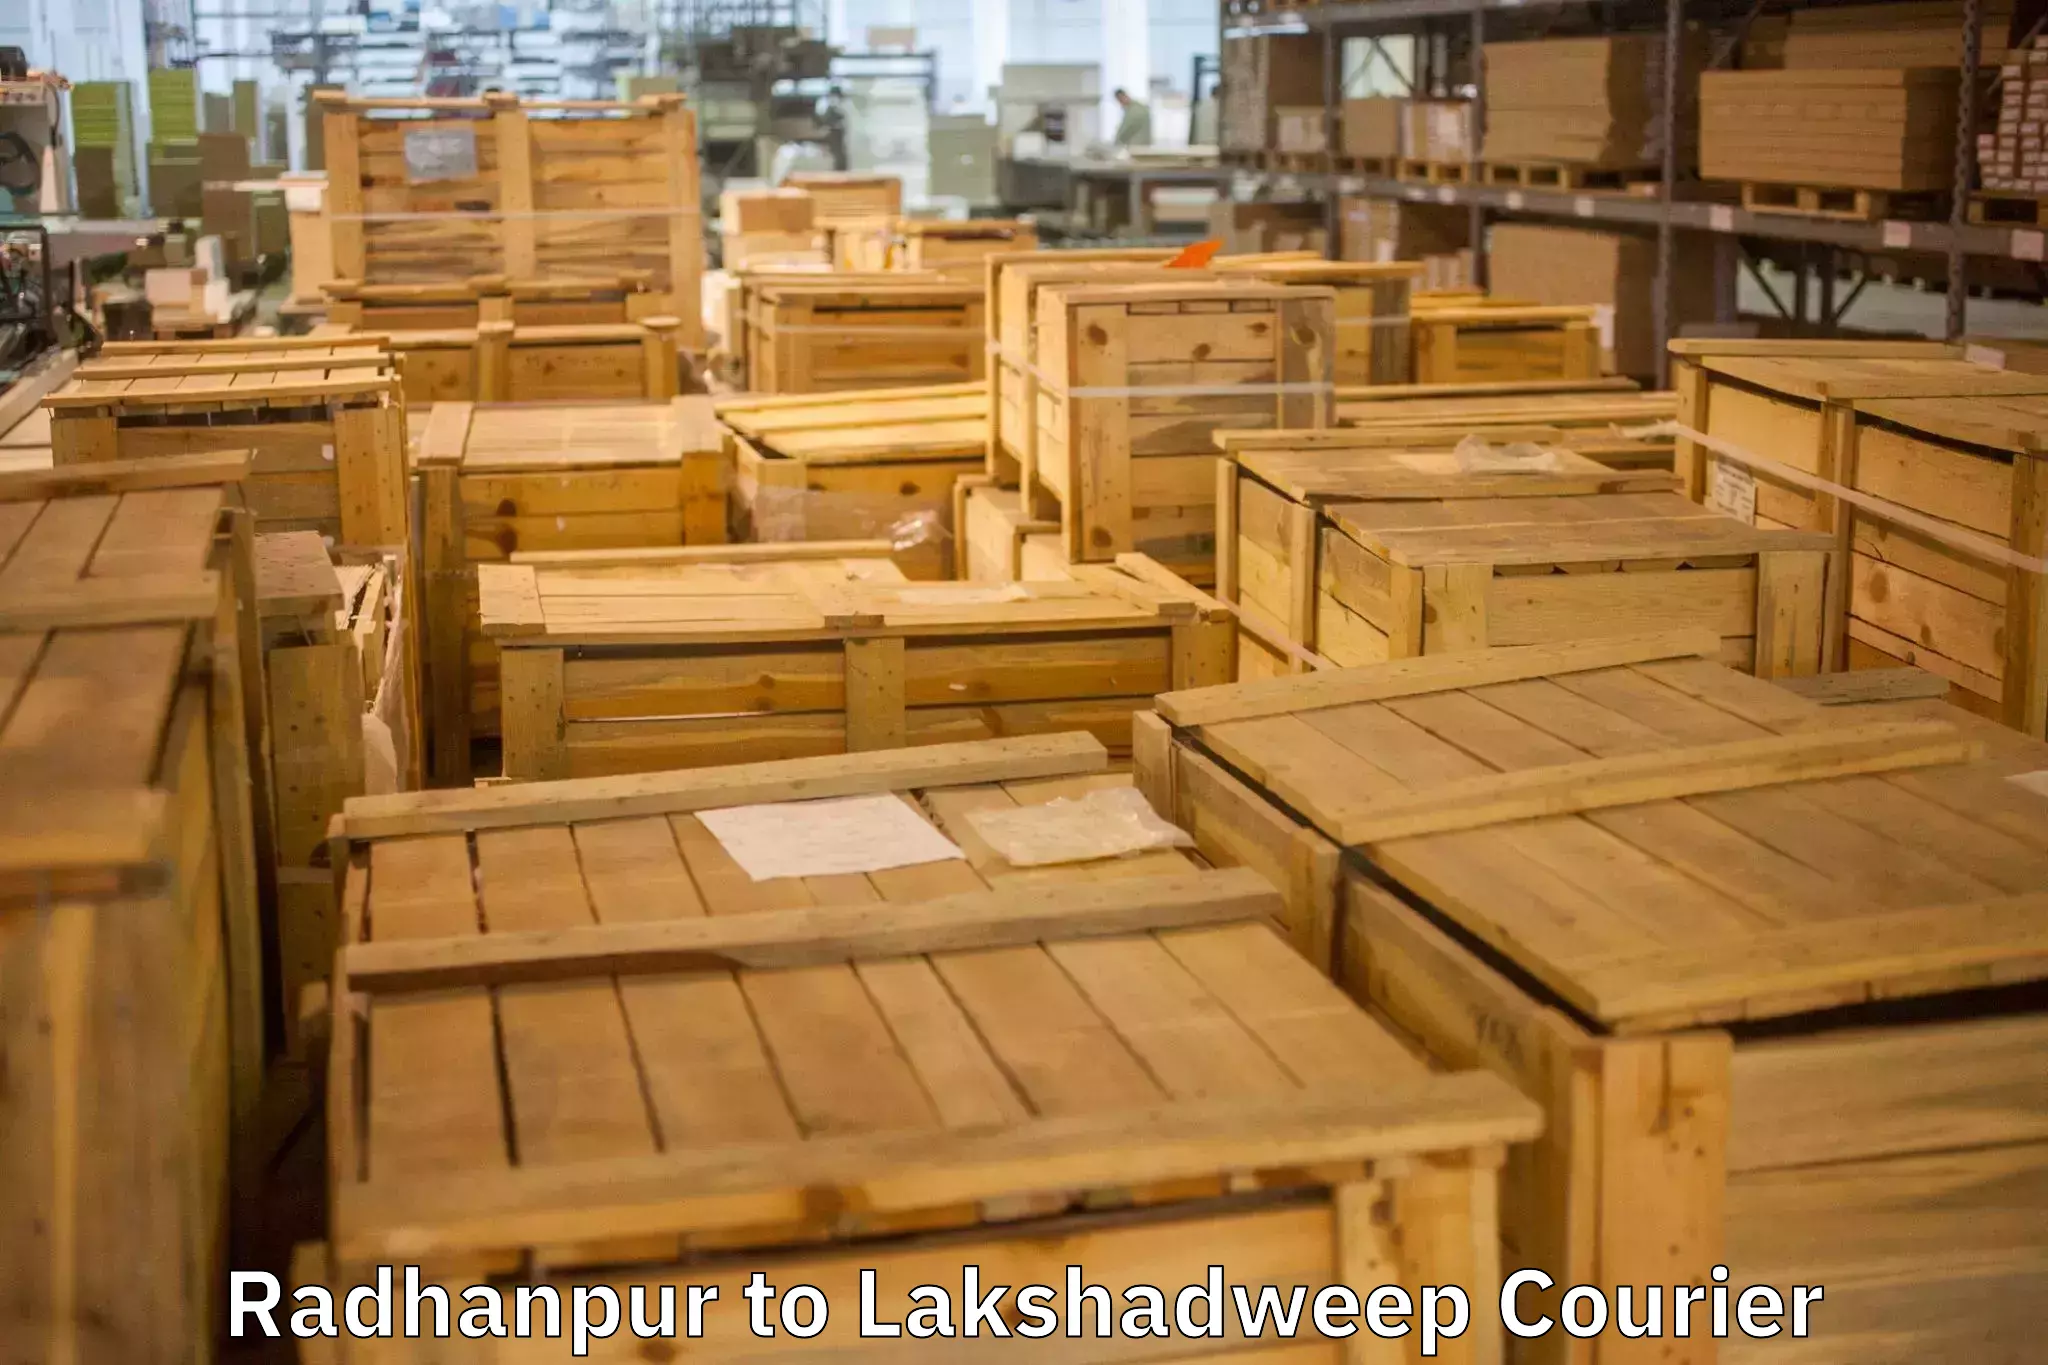 Furniture transport experts Radhanpur to Lakshadweep